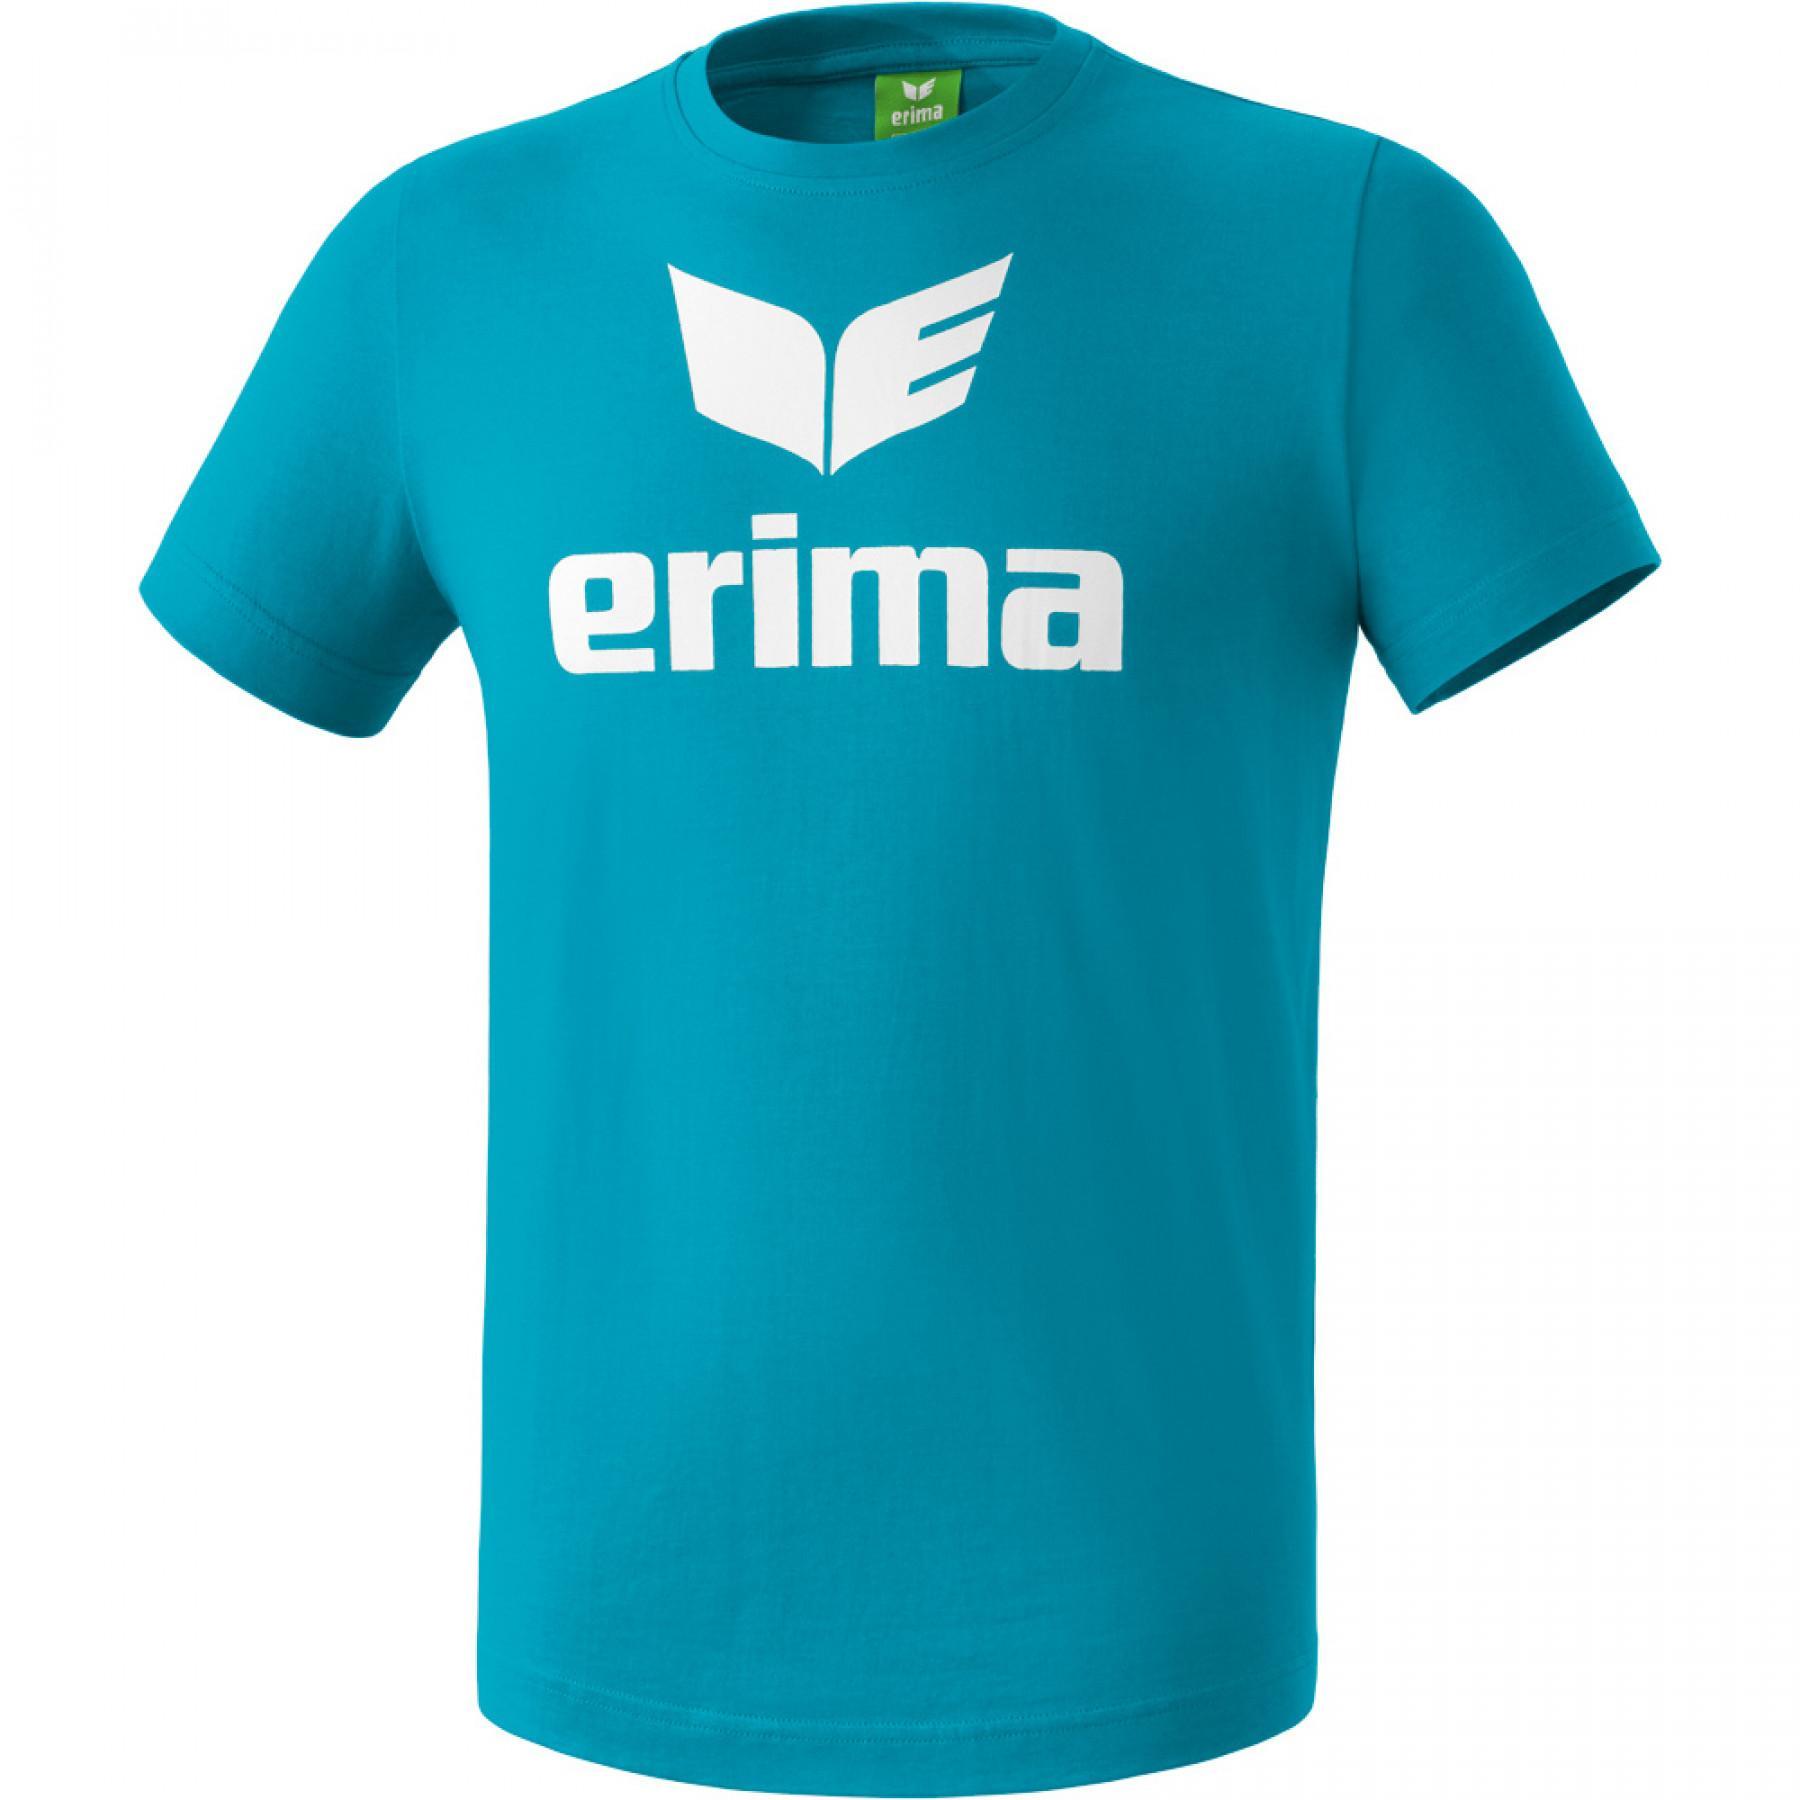 Maglietta per bambini Erima promo